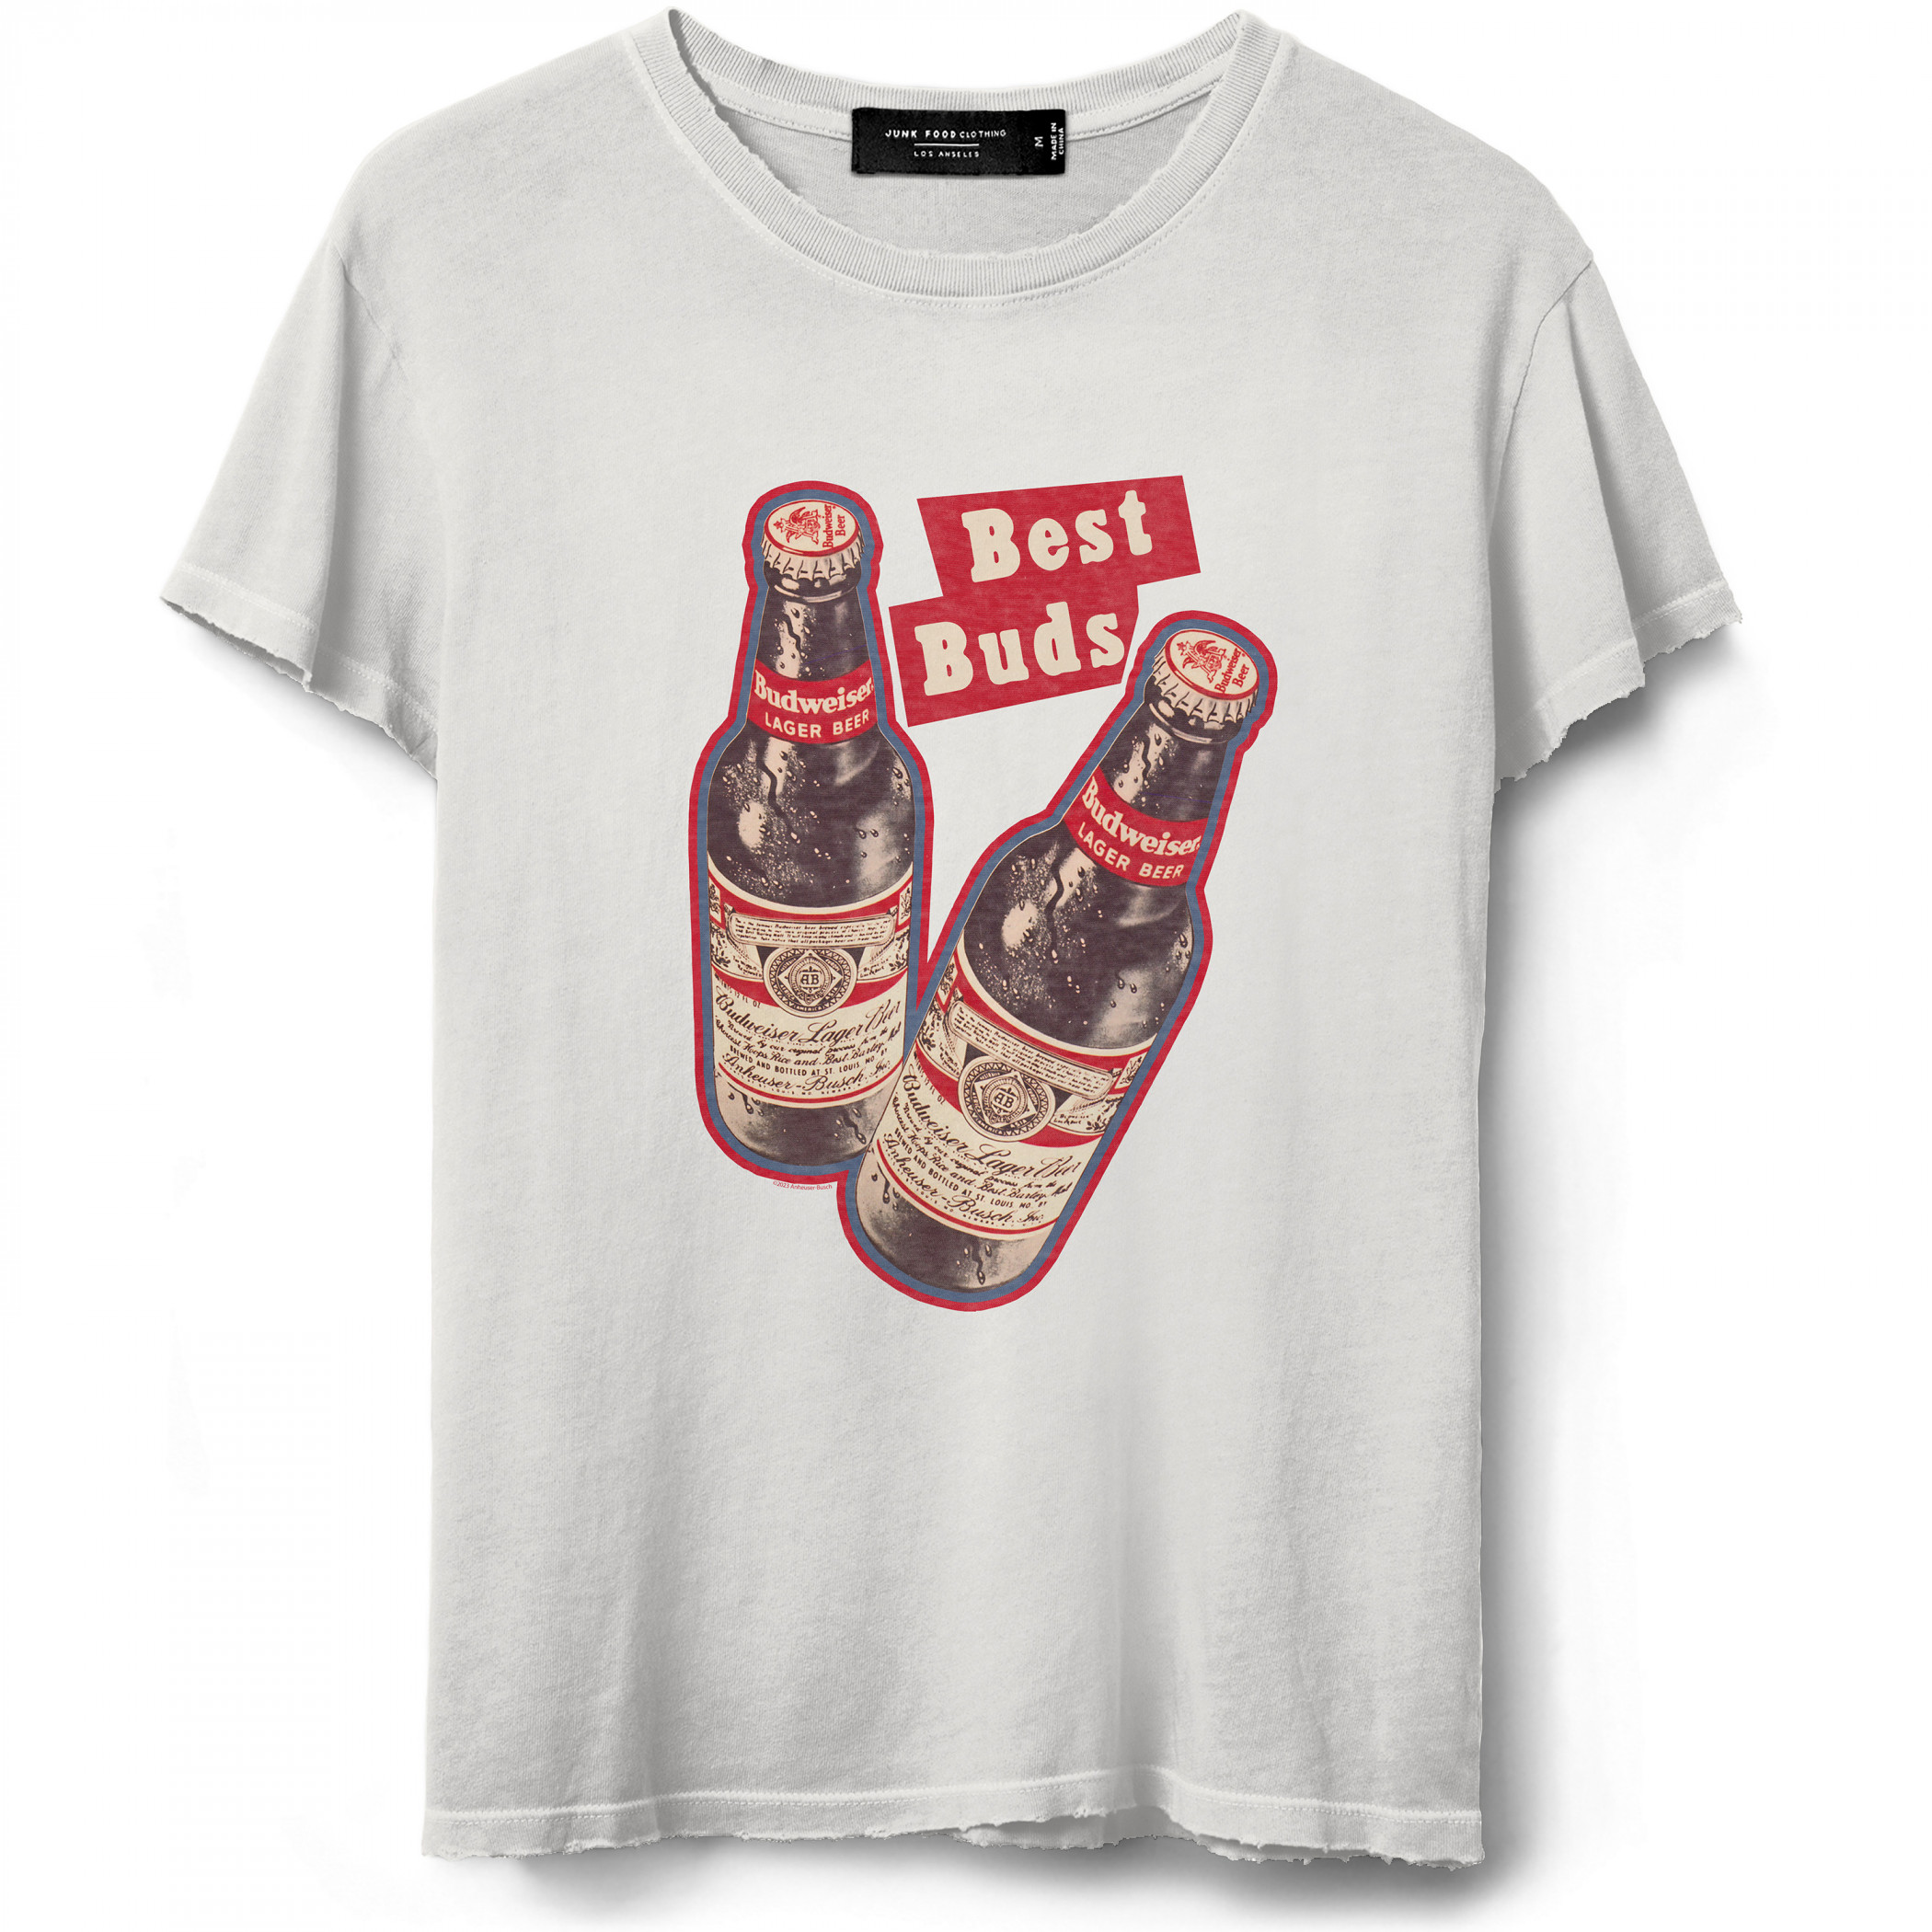 Budweiser Bud's Best T-Shirt by Junk Food